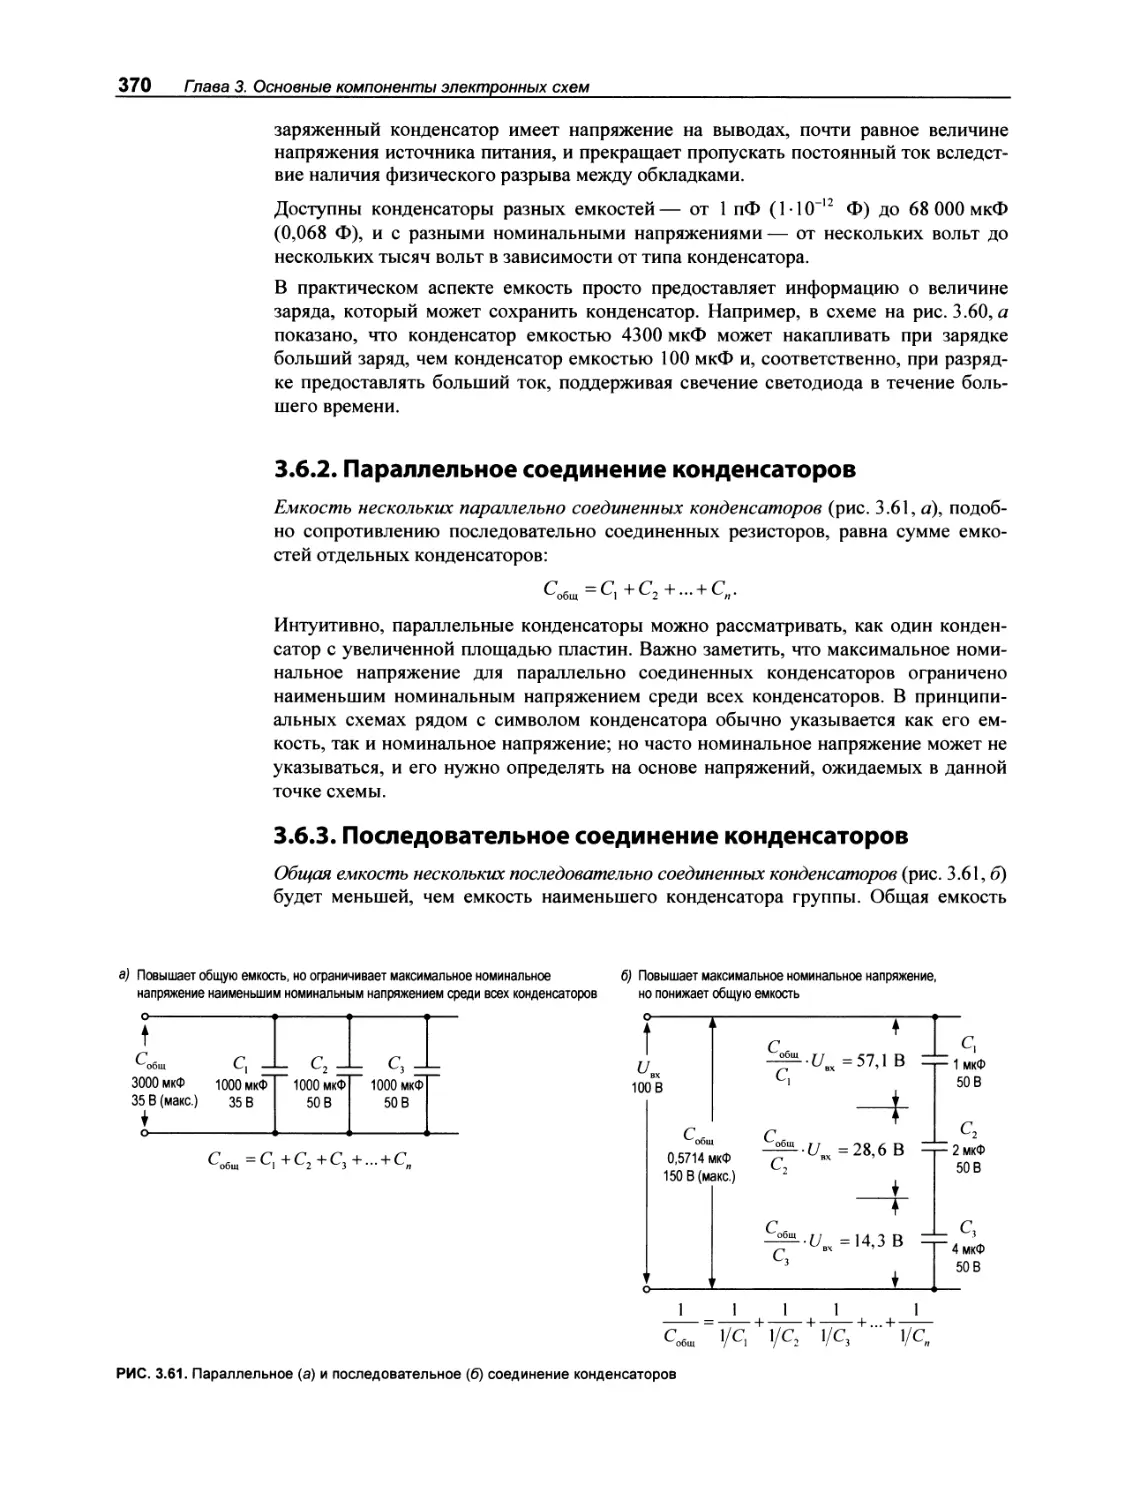 3.6.2. Параллельное соединение конденсаторов
3.6.3. Последовательное соединение конденсаторов